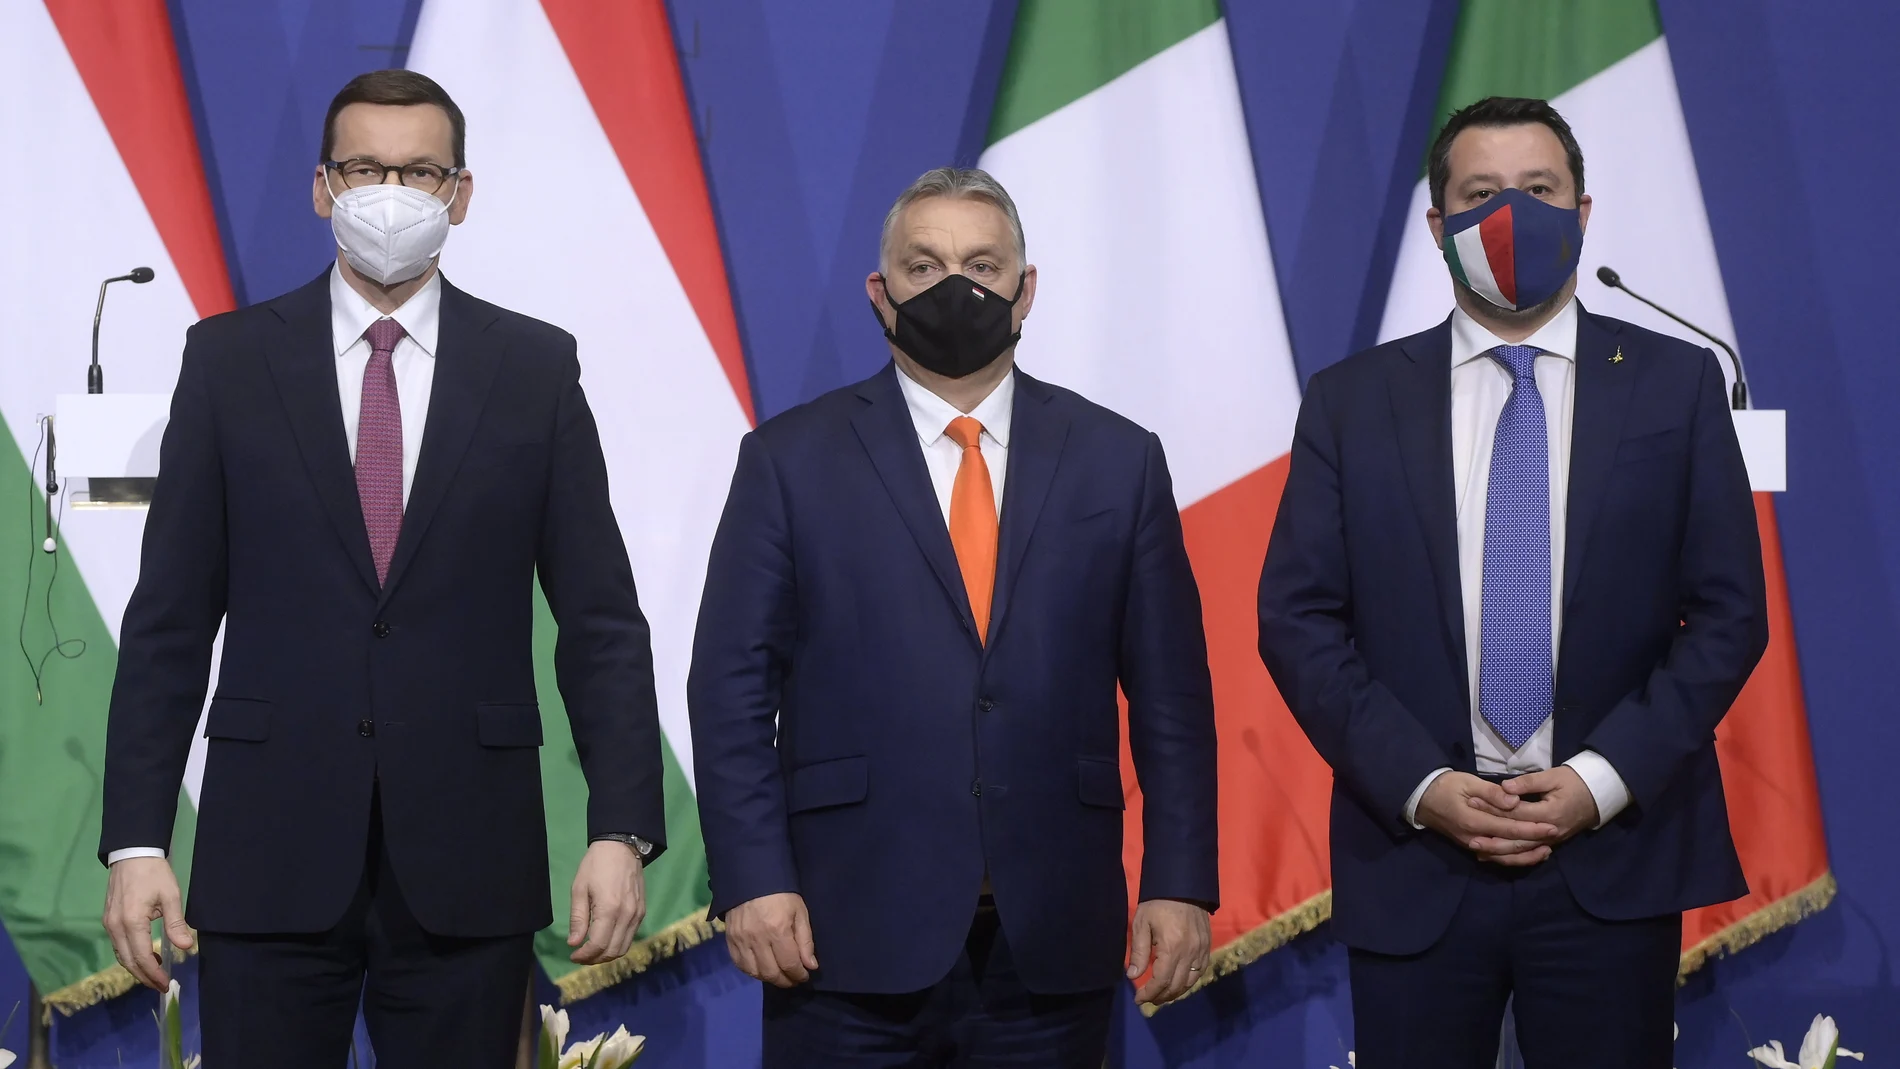 El primer ministro polaco Mateusz Morawiecki, su homólogo húngaro Viktor Orban y el líder de la extrema derecha italiana Matteo Salvini